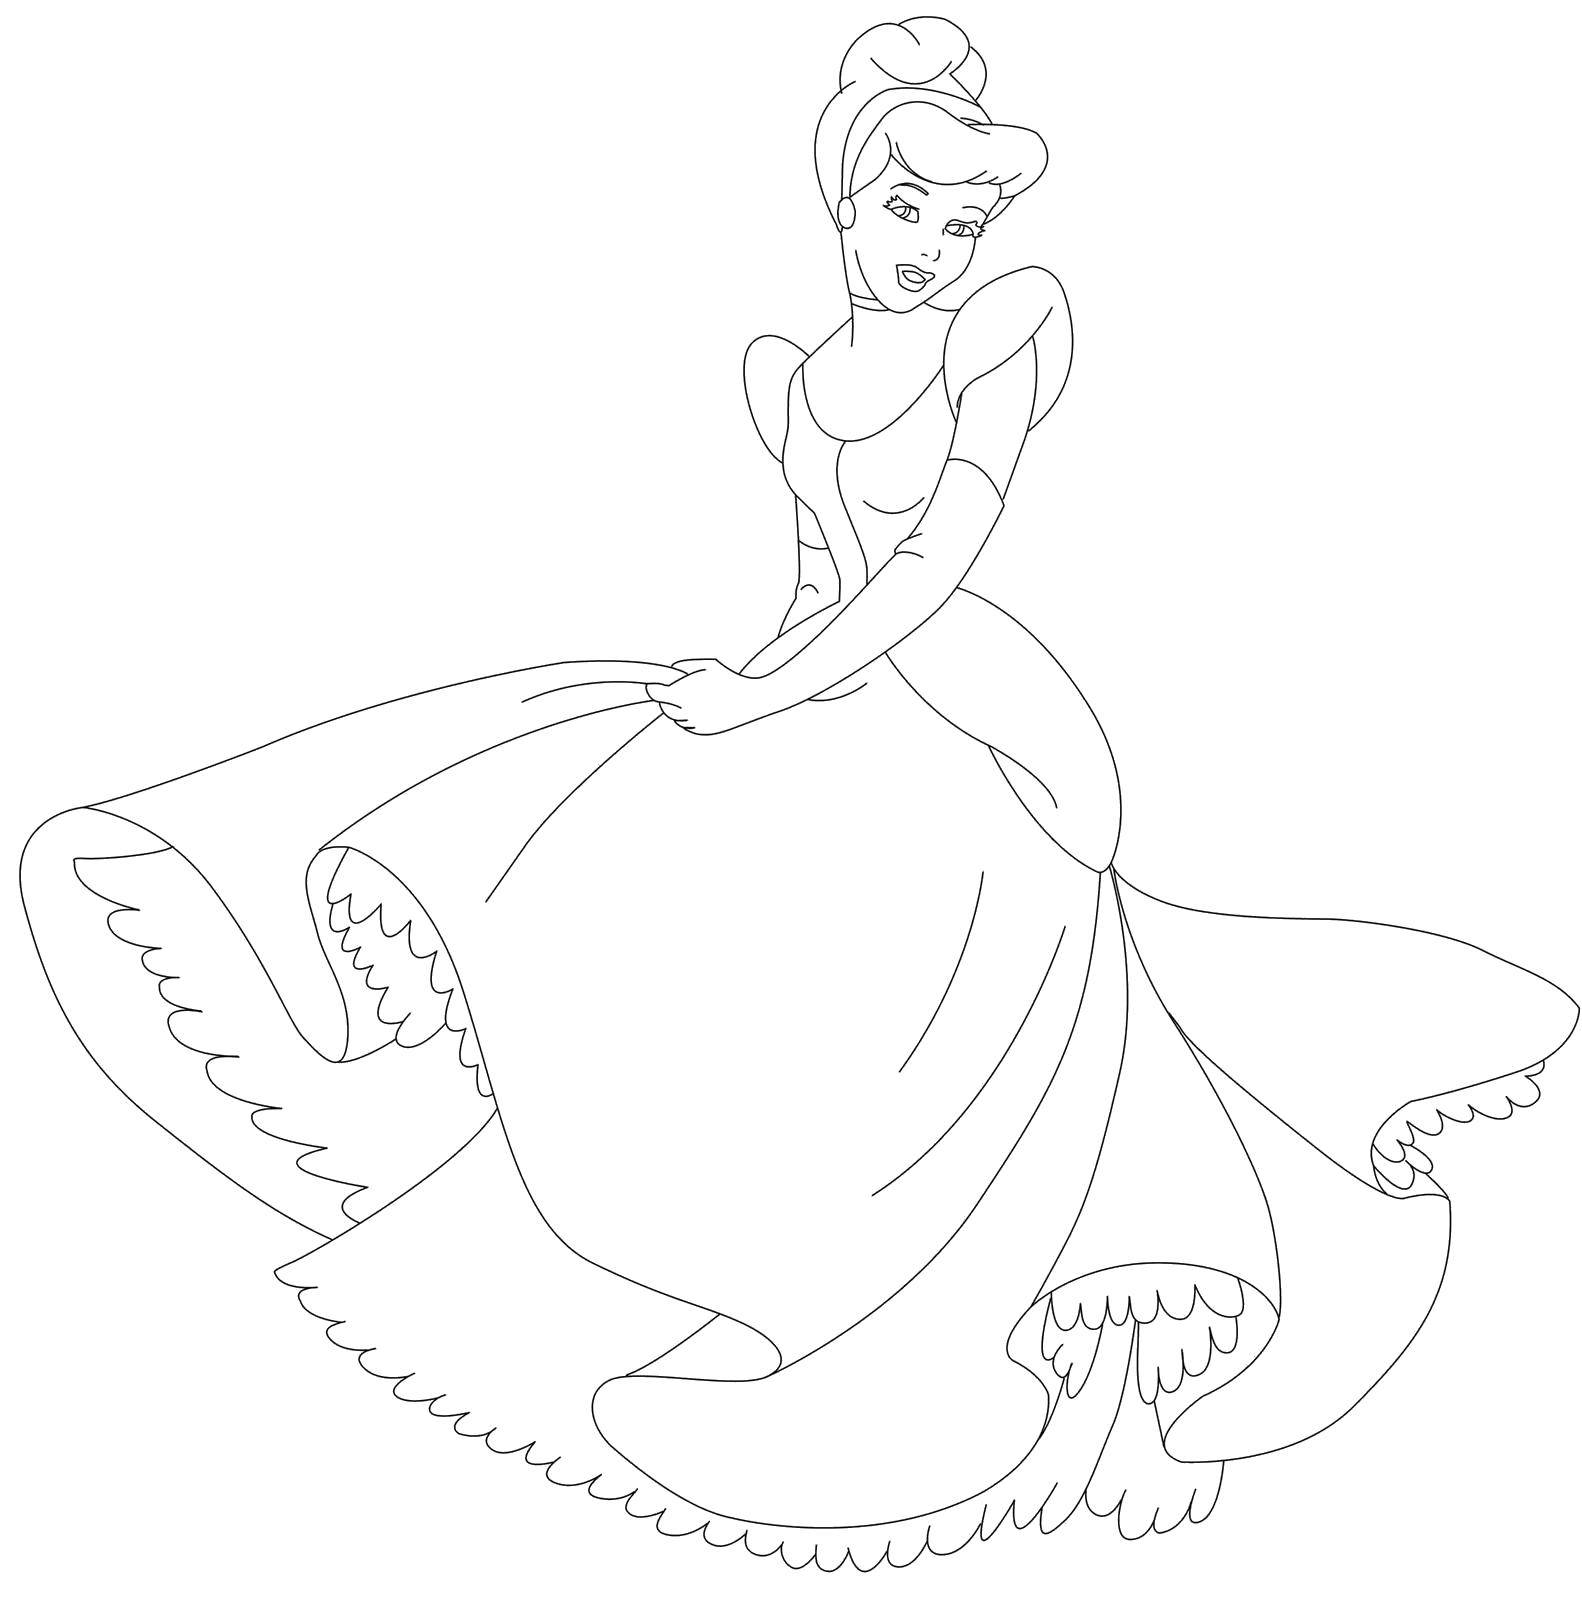 Coloring Cinderella. Category Disney coloring pages. Tags:  Disney, Cinderella.